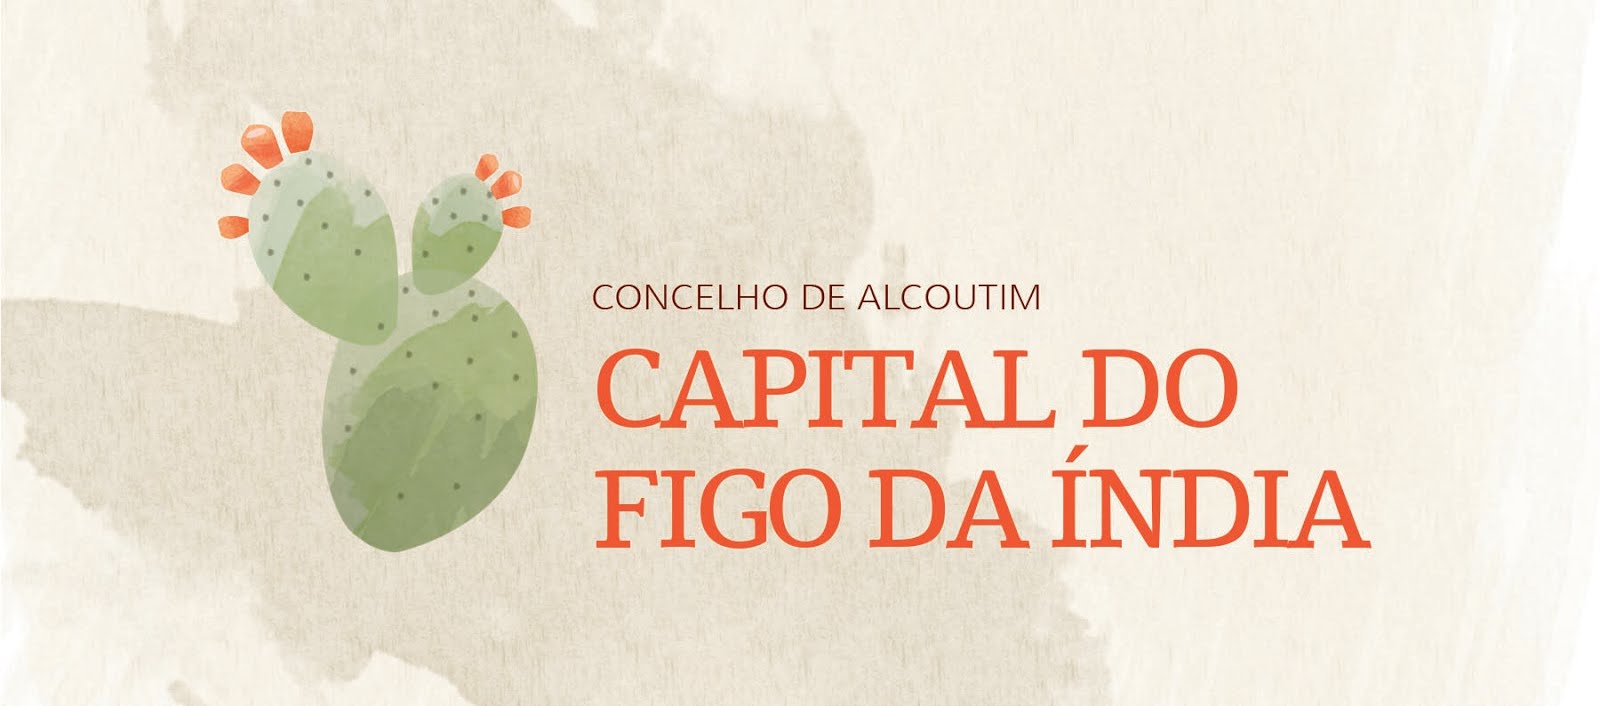 Capital do Figo da índia - Concelho de Alcoutim